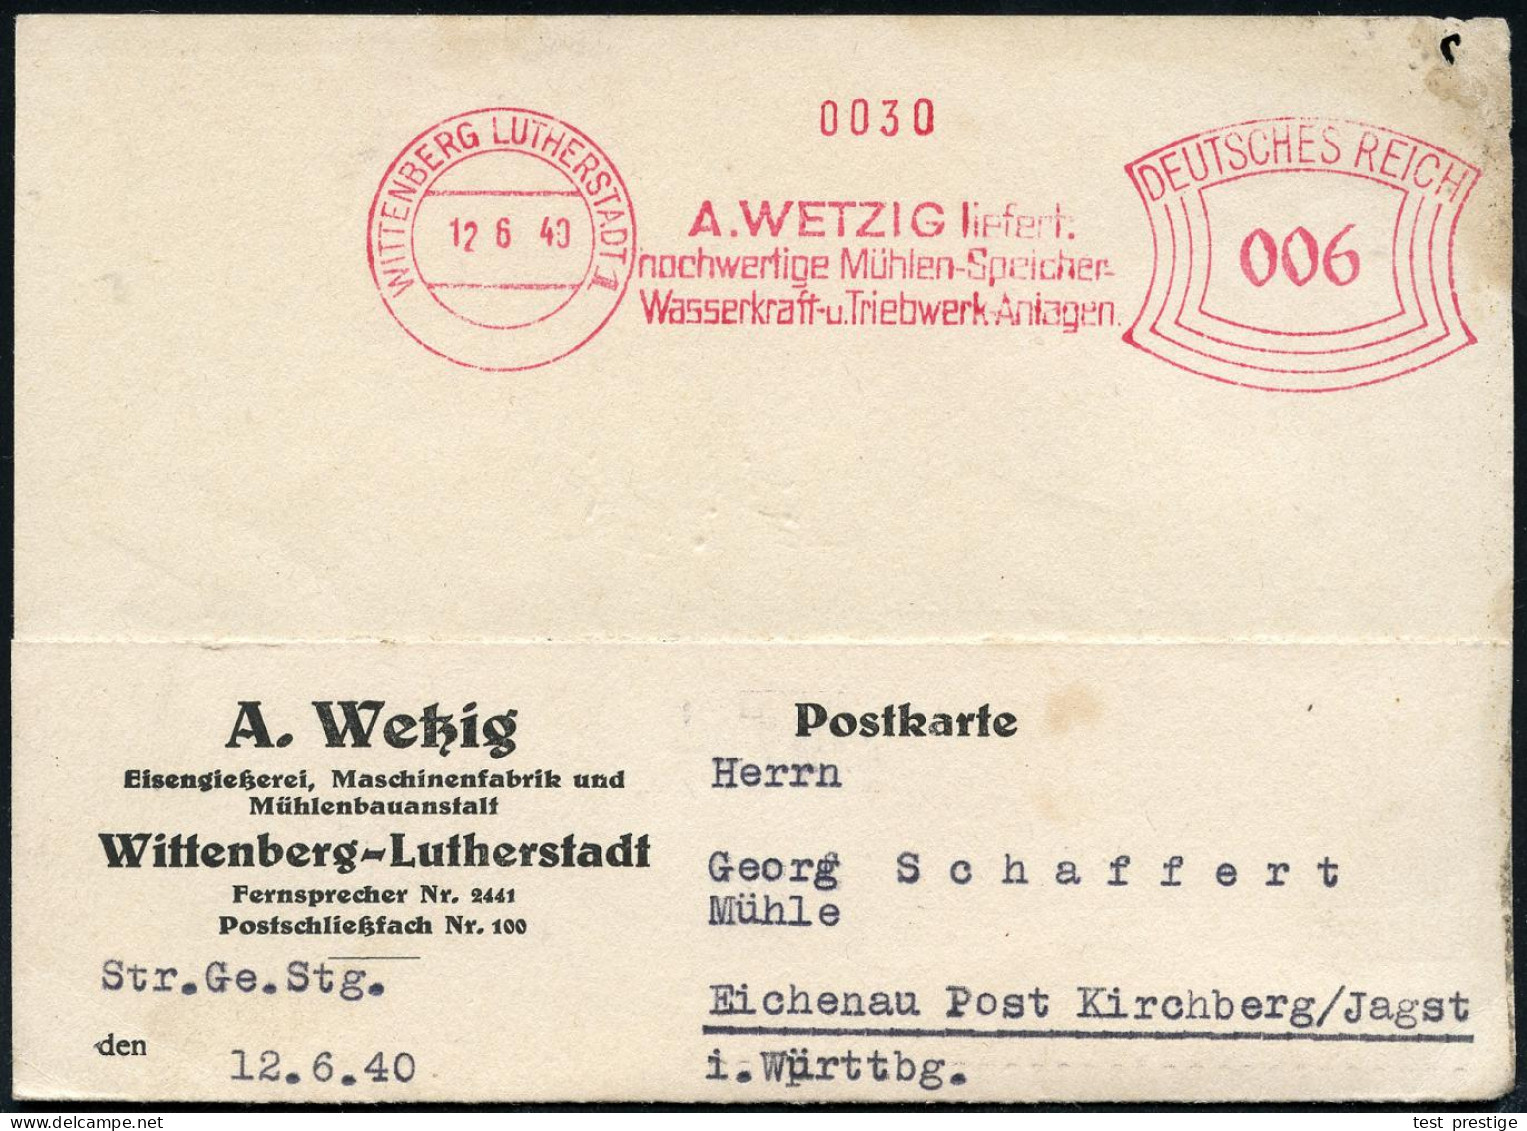 WITTENBERG  L U T H E R S T A D T / A.WETZIG Liefert/ ..Mühlen-Speicher/ Wasserkraft-u.Triebwerk-Anlagen 1940 (12.6.) Se - Cristianesimo